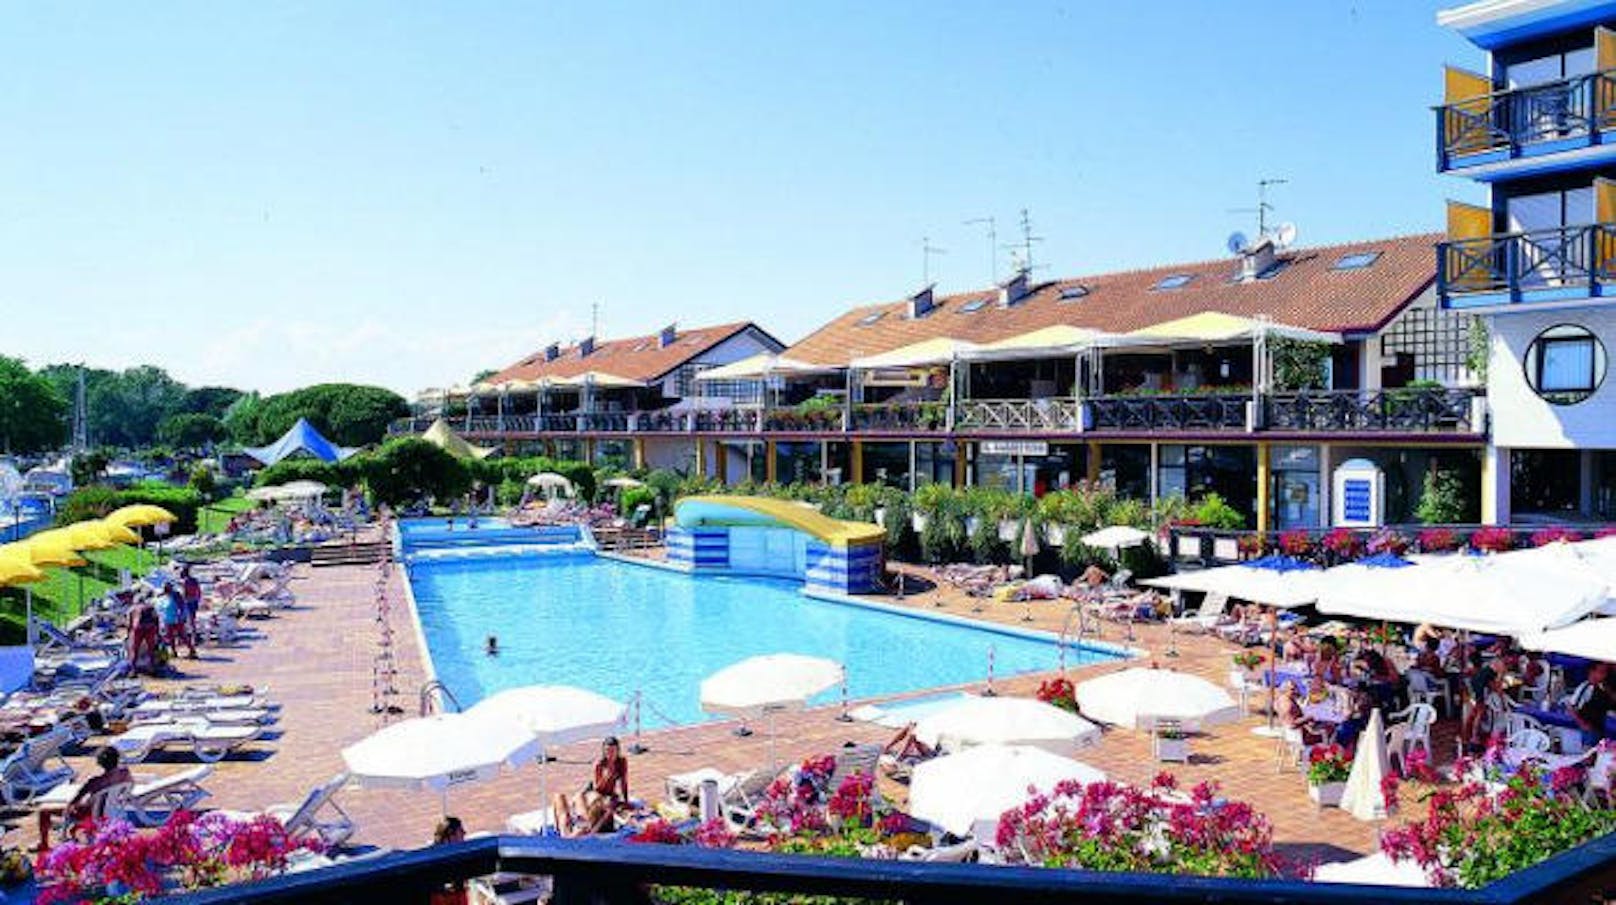 Hotel Marina Uno: vier Sterne, Wellness, Kinderbetreuung - drei Nächte ab 160 Euro. <a href="https://www.holiday365.at/product.php?id=4412">Hier geht es zum Angebot!</a>